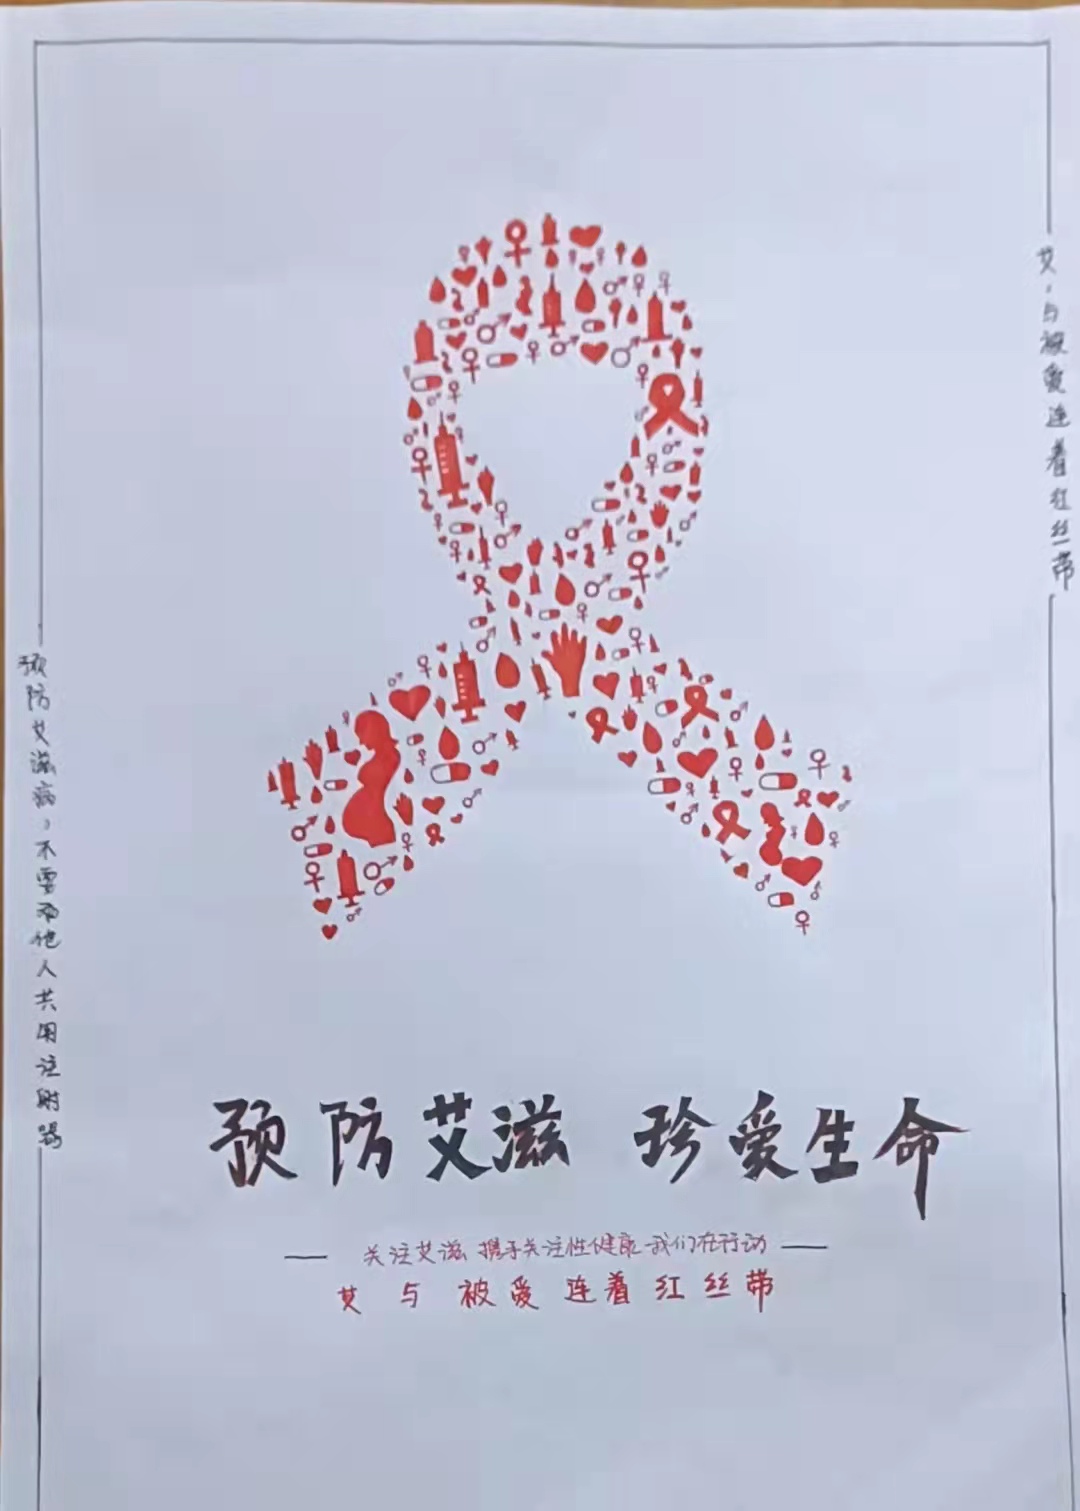 医学院团总支红十字协会防艾宣传海报活动投票通道